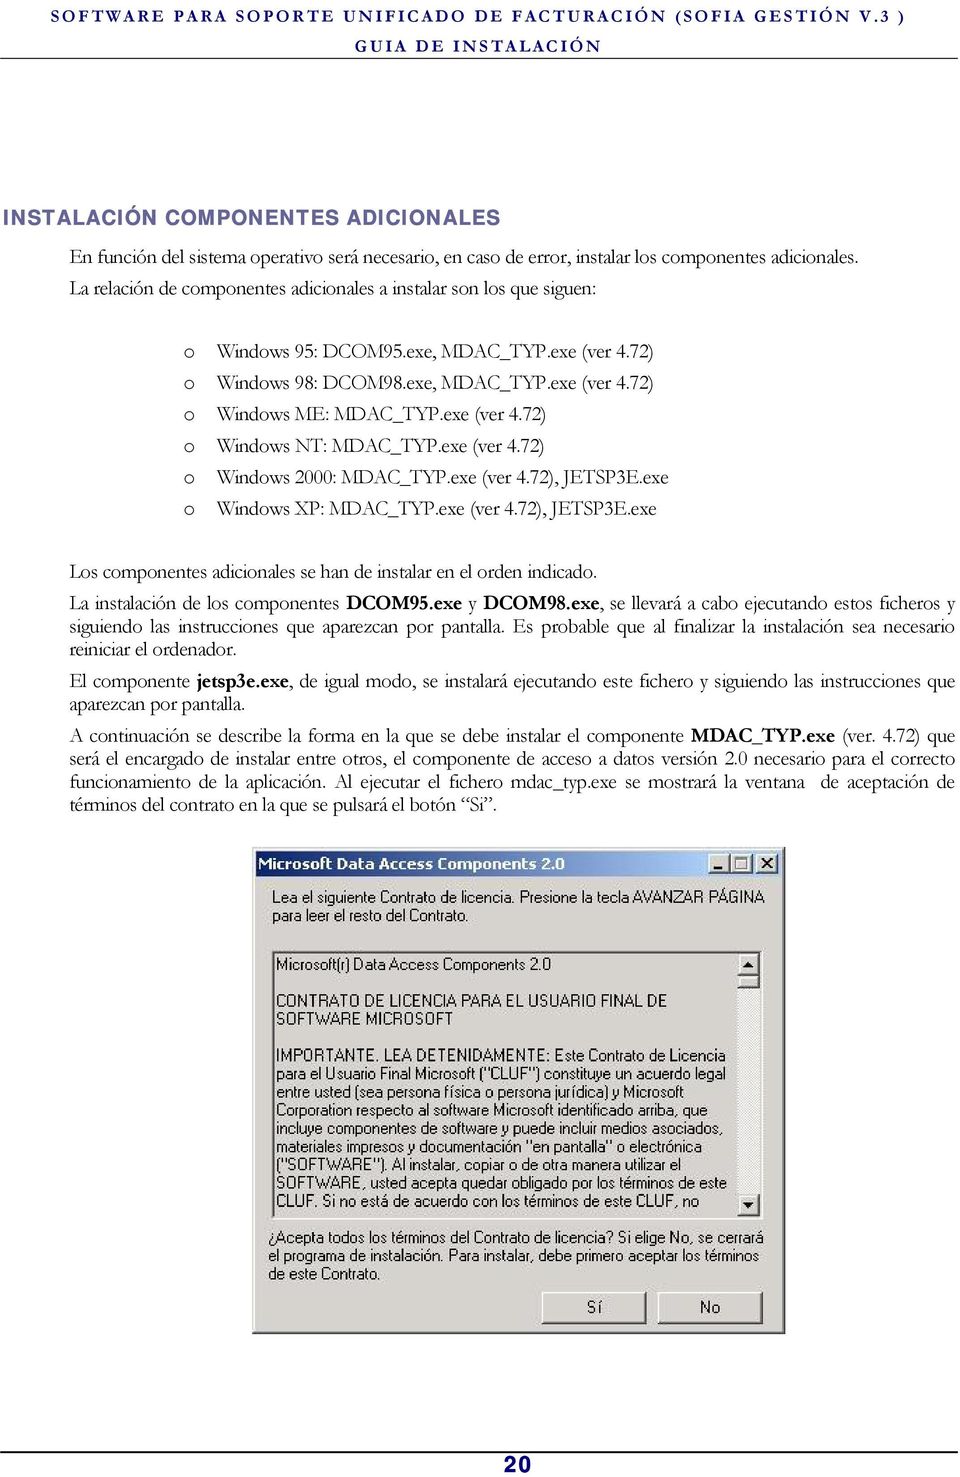 exe (ver 4.72) o Windows NT: MDAC_TYP.exe (ver 4.72) o Windows 2000: MDAC_TYP.exe (ver 4.72), JETSP3E.exe o Windows XP: MDAC_TYP.exe (ver 4.72), JETSP3E.exe Los componentes adicionales se han de instalar en el orden indicado.